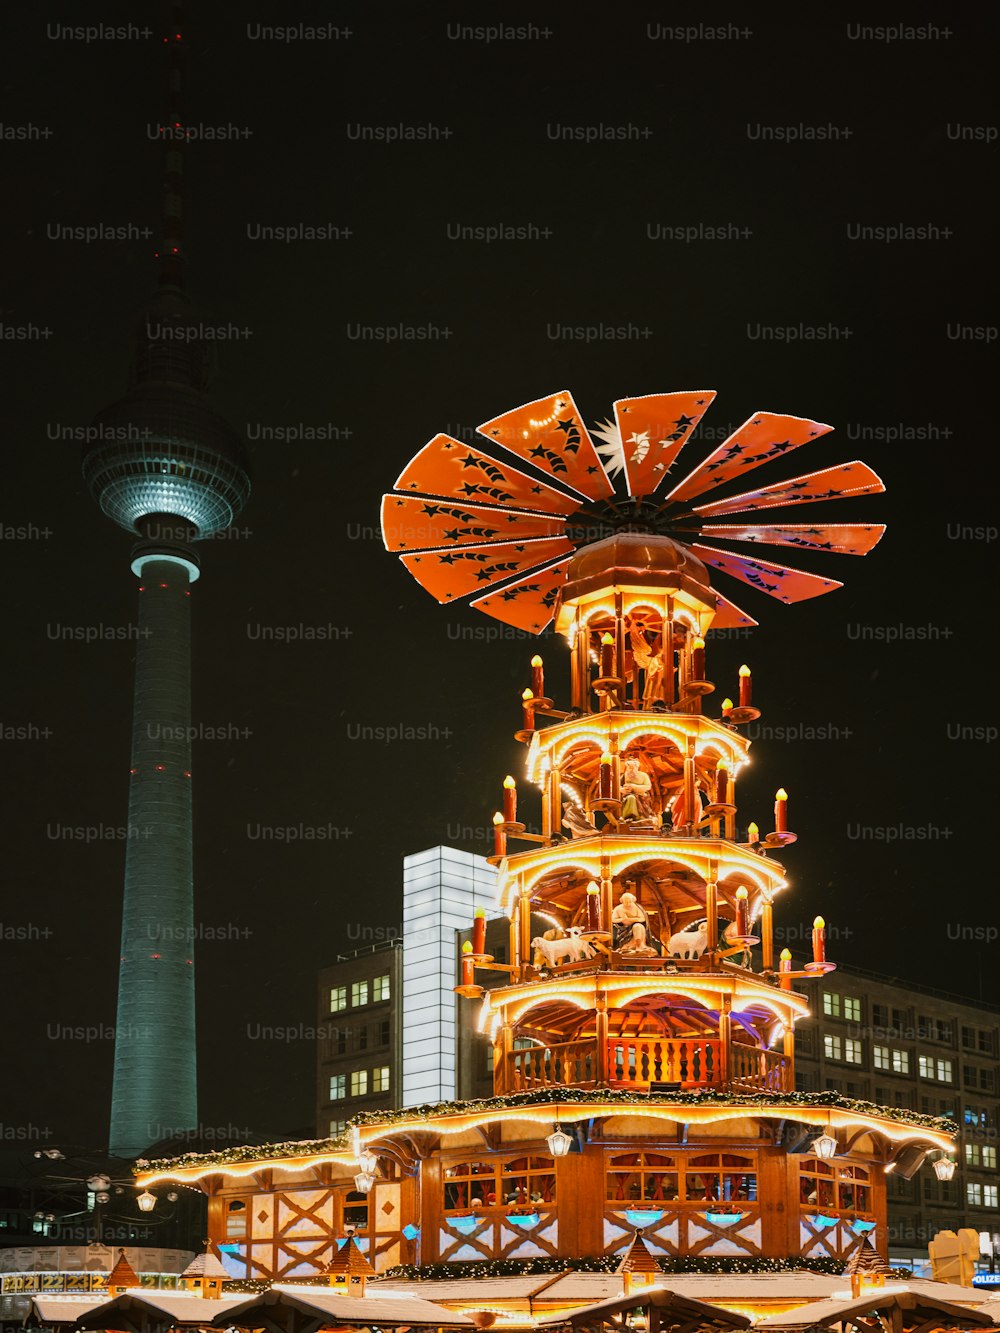 Una ruota panoramica illuminata di notte davanti a un alto edificio